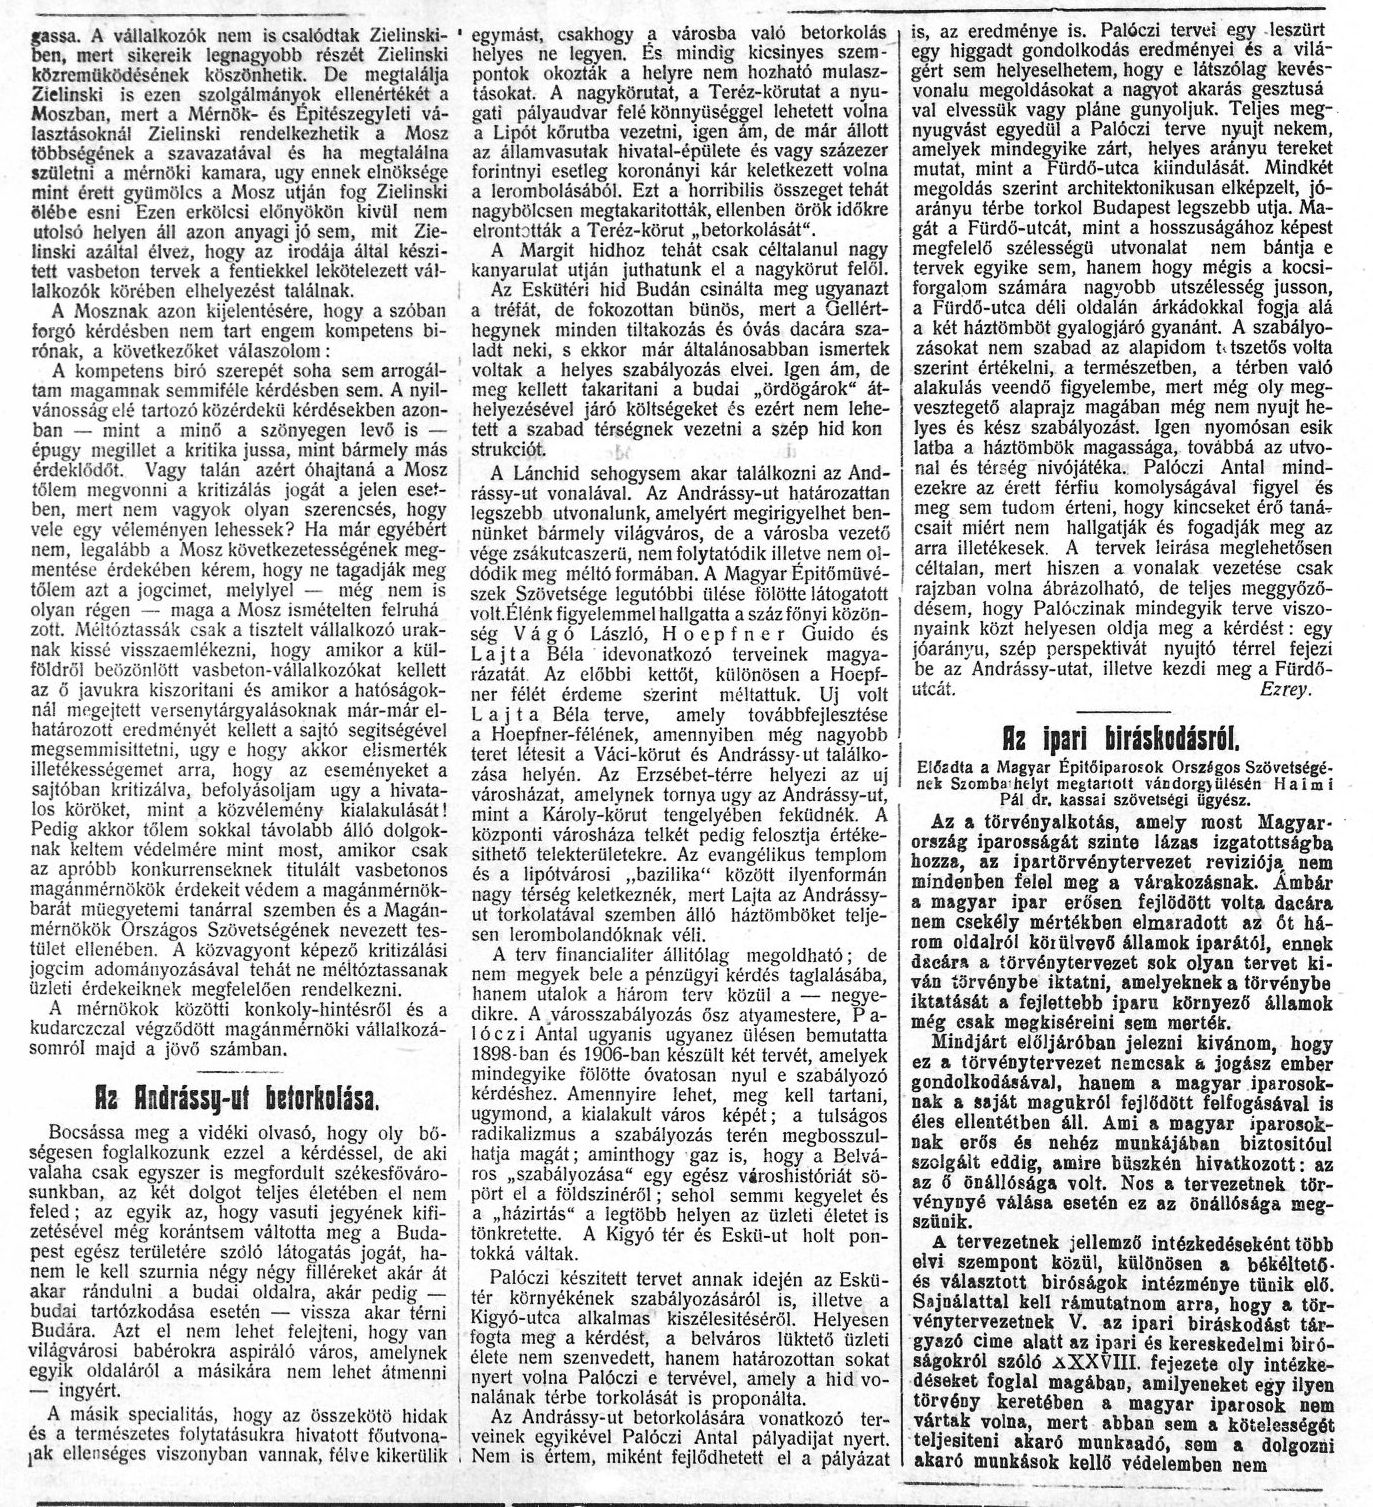 Vállalkozók Lapja, 1910. XI. 23. 6. p. 